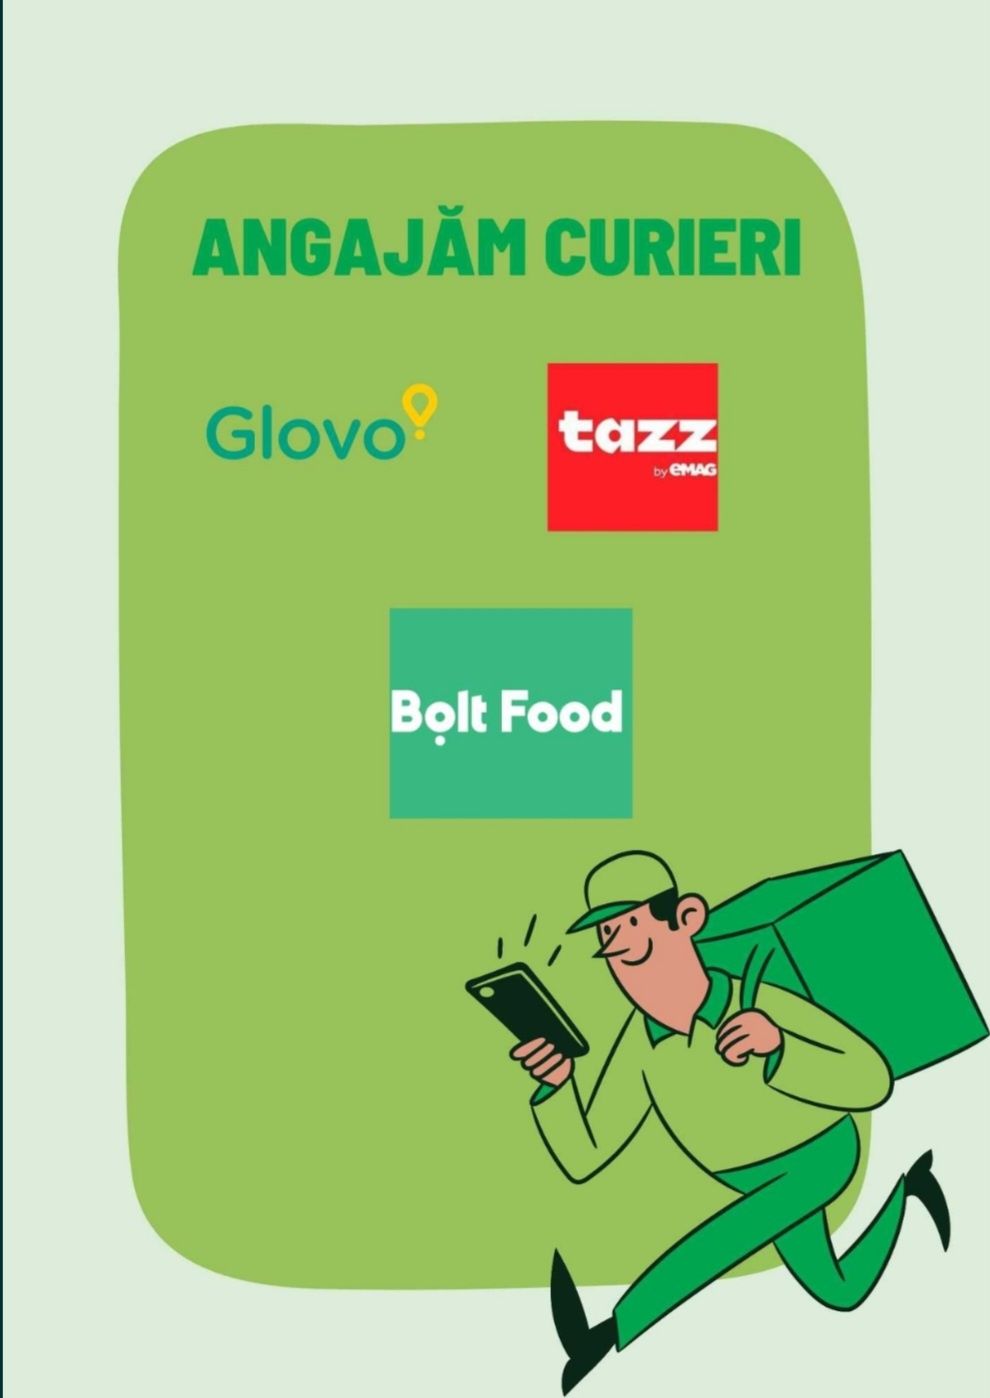 Vrei un job full-time sau part-time ? Hai in echipa Bolt Food Cluj